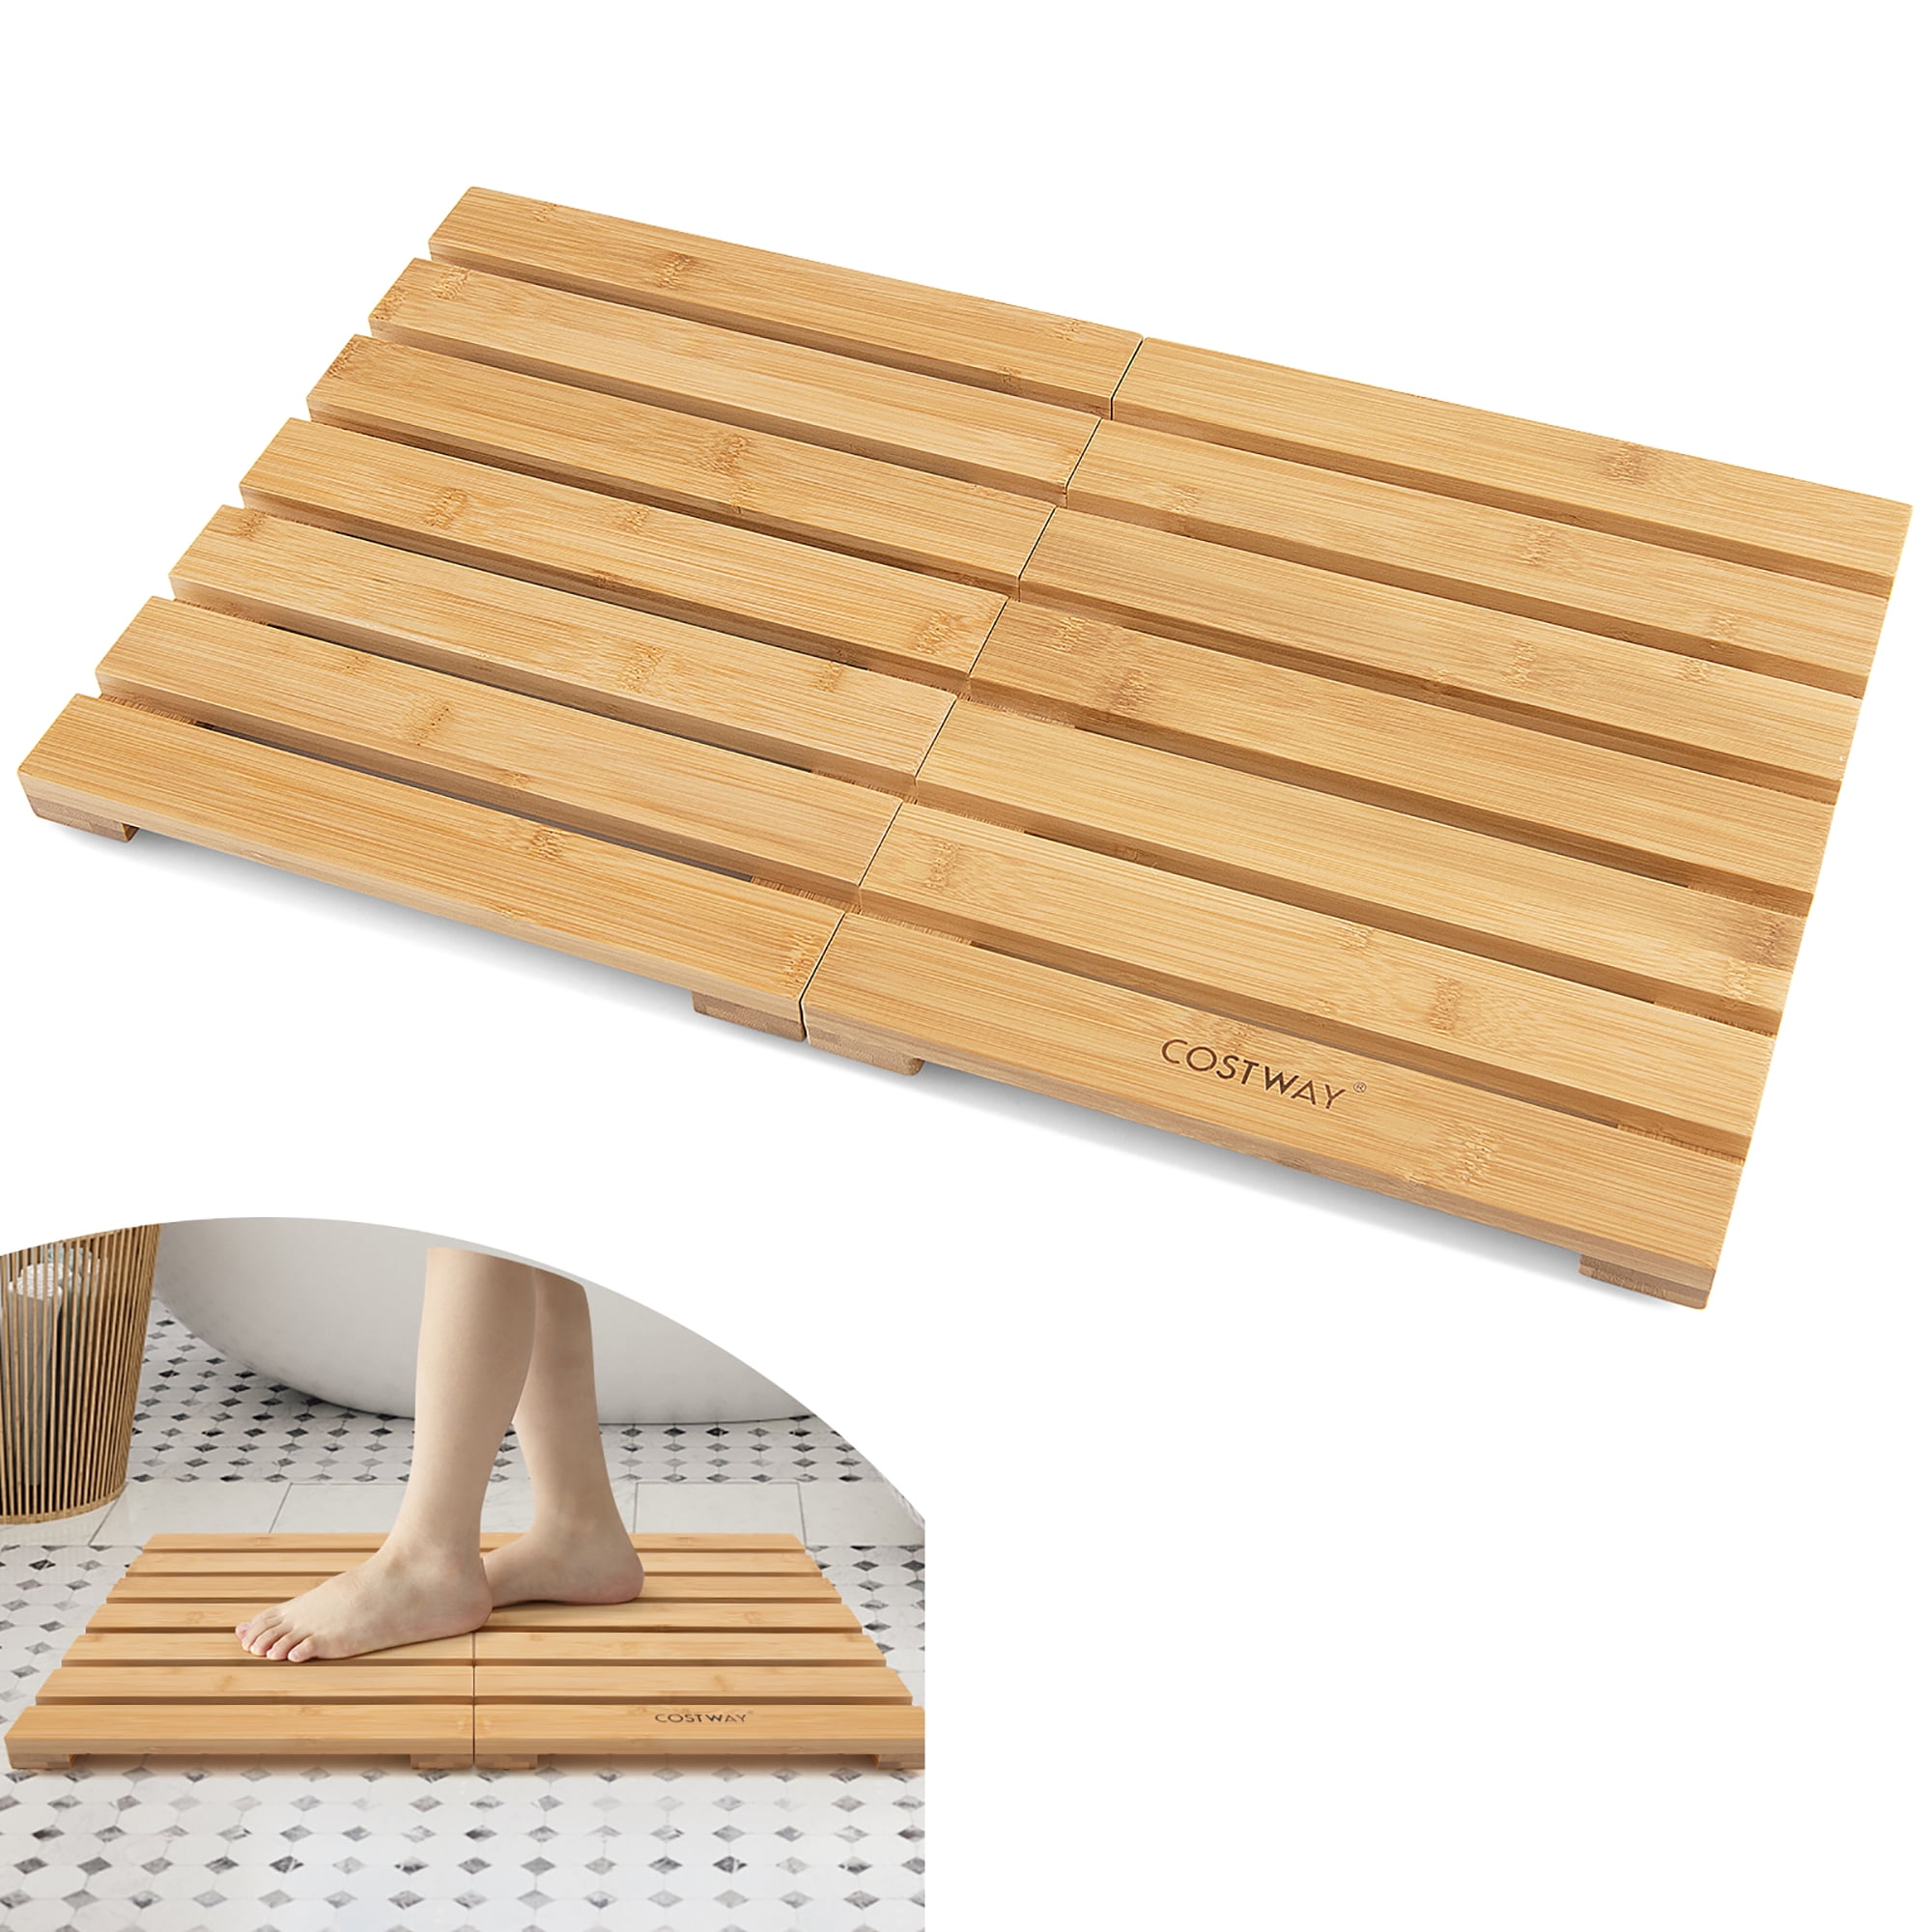 Idioot Scheiding US dollar Costway Bamboo Bath Mat Foldable Shower Mat w/ Non-slip Pads & Slatted  Design - Walmart.com